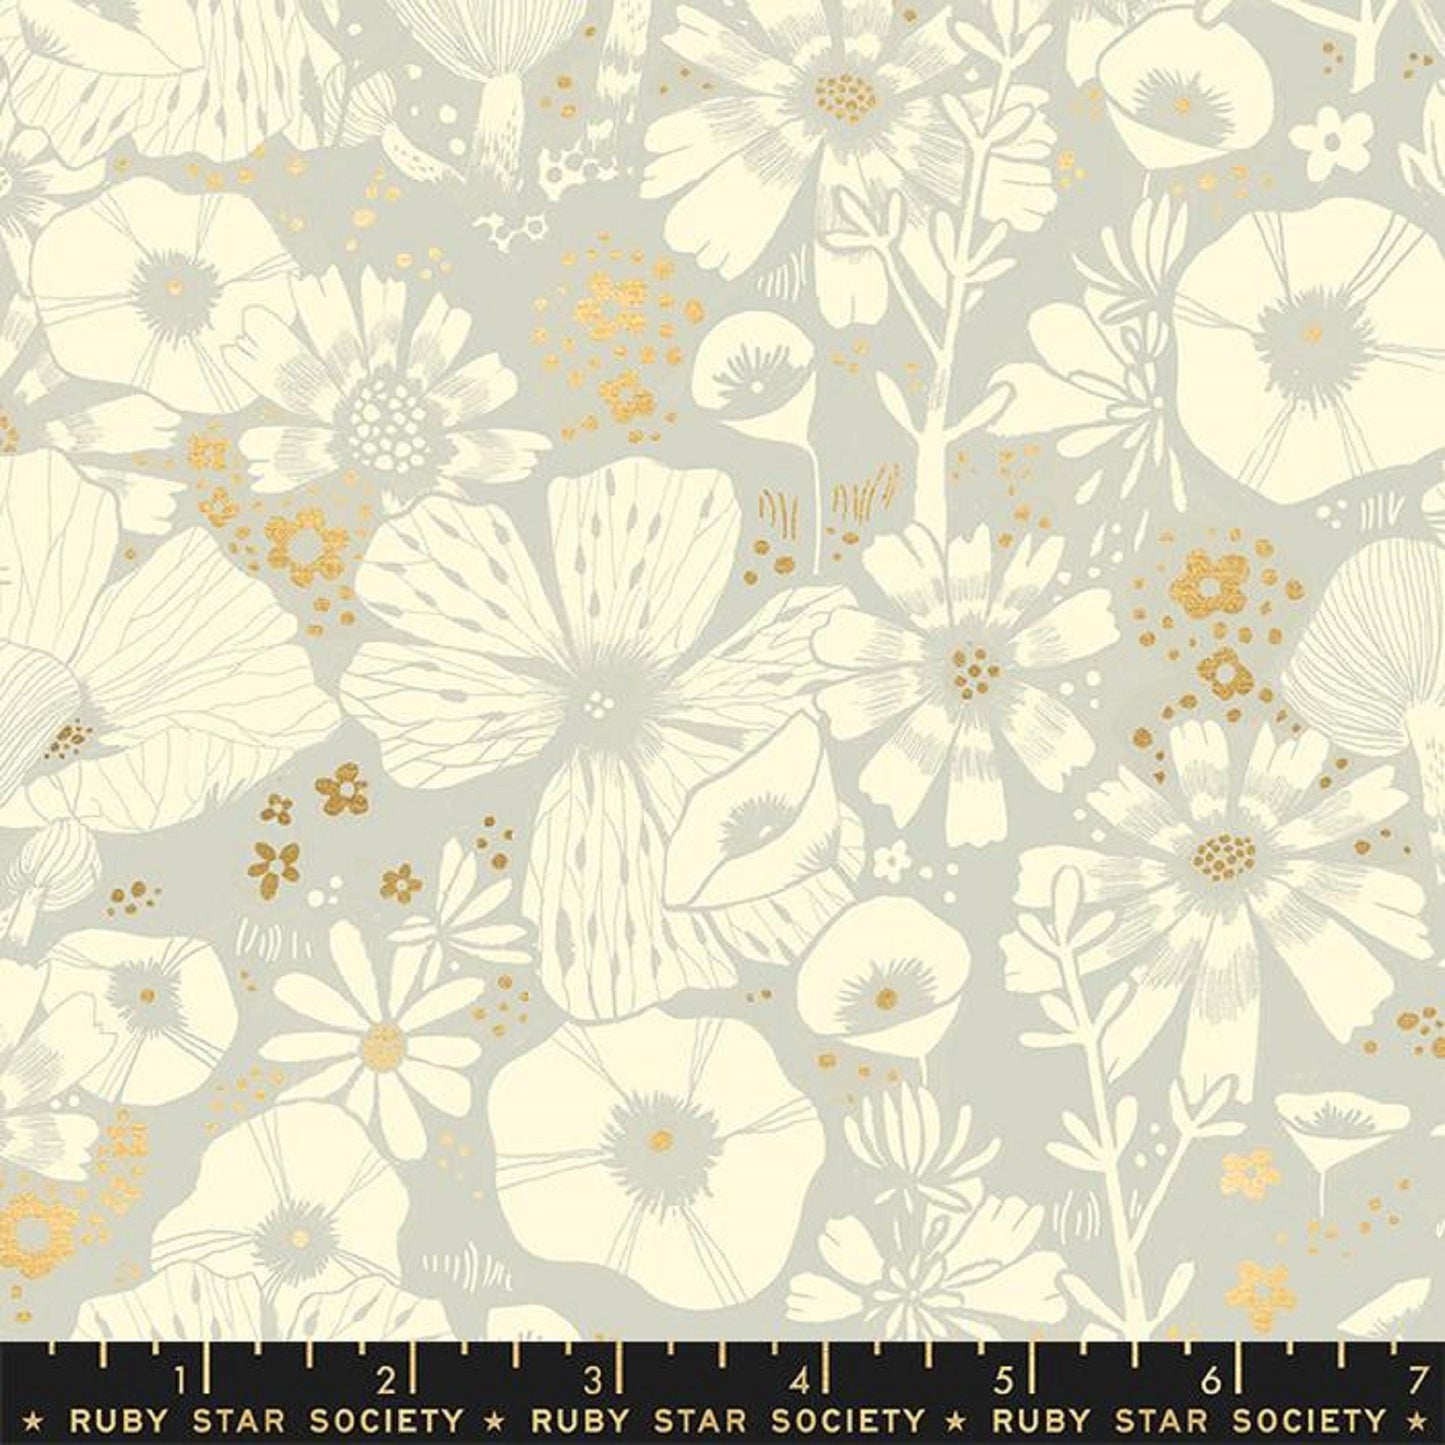 Hiding Spot Ash METALLIC Gold Firefly Sarah Watts Ruby Star Society Moda 100% Cotton Quilting Fabric Yardage Fabric Fetish